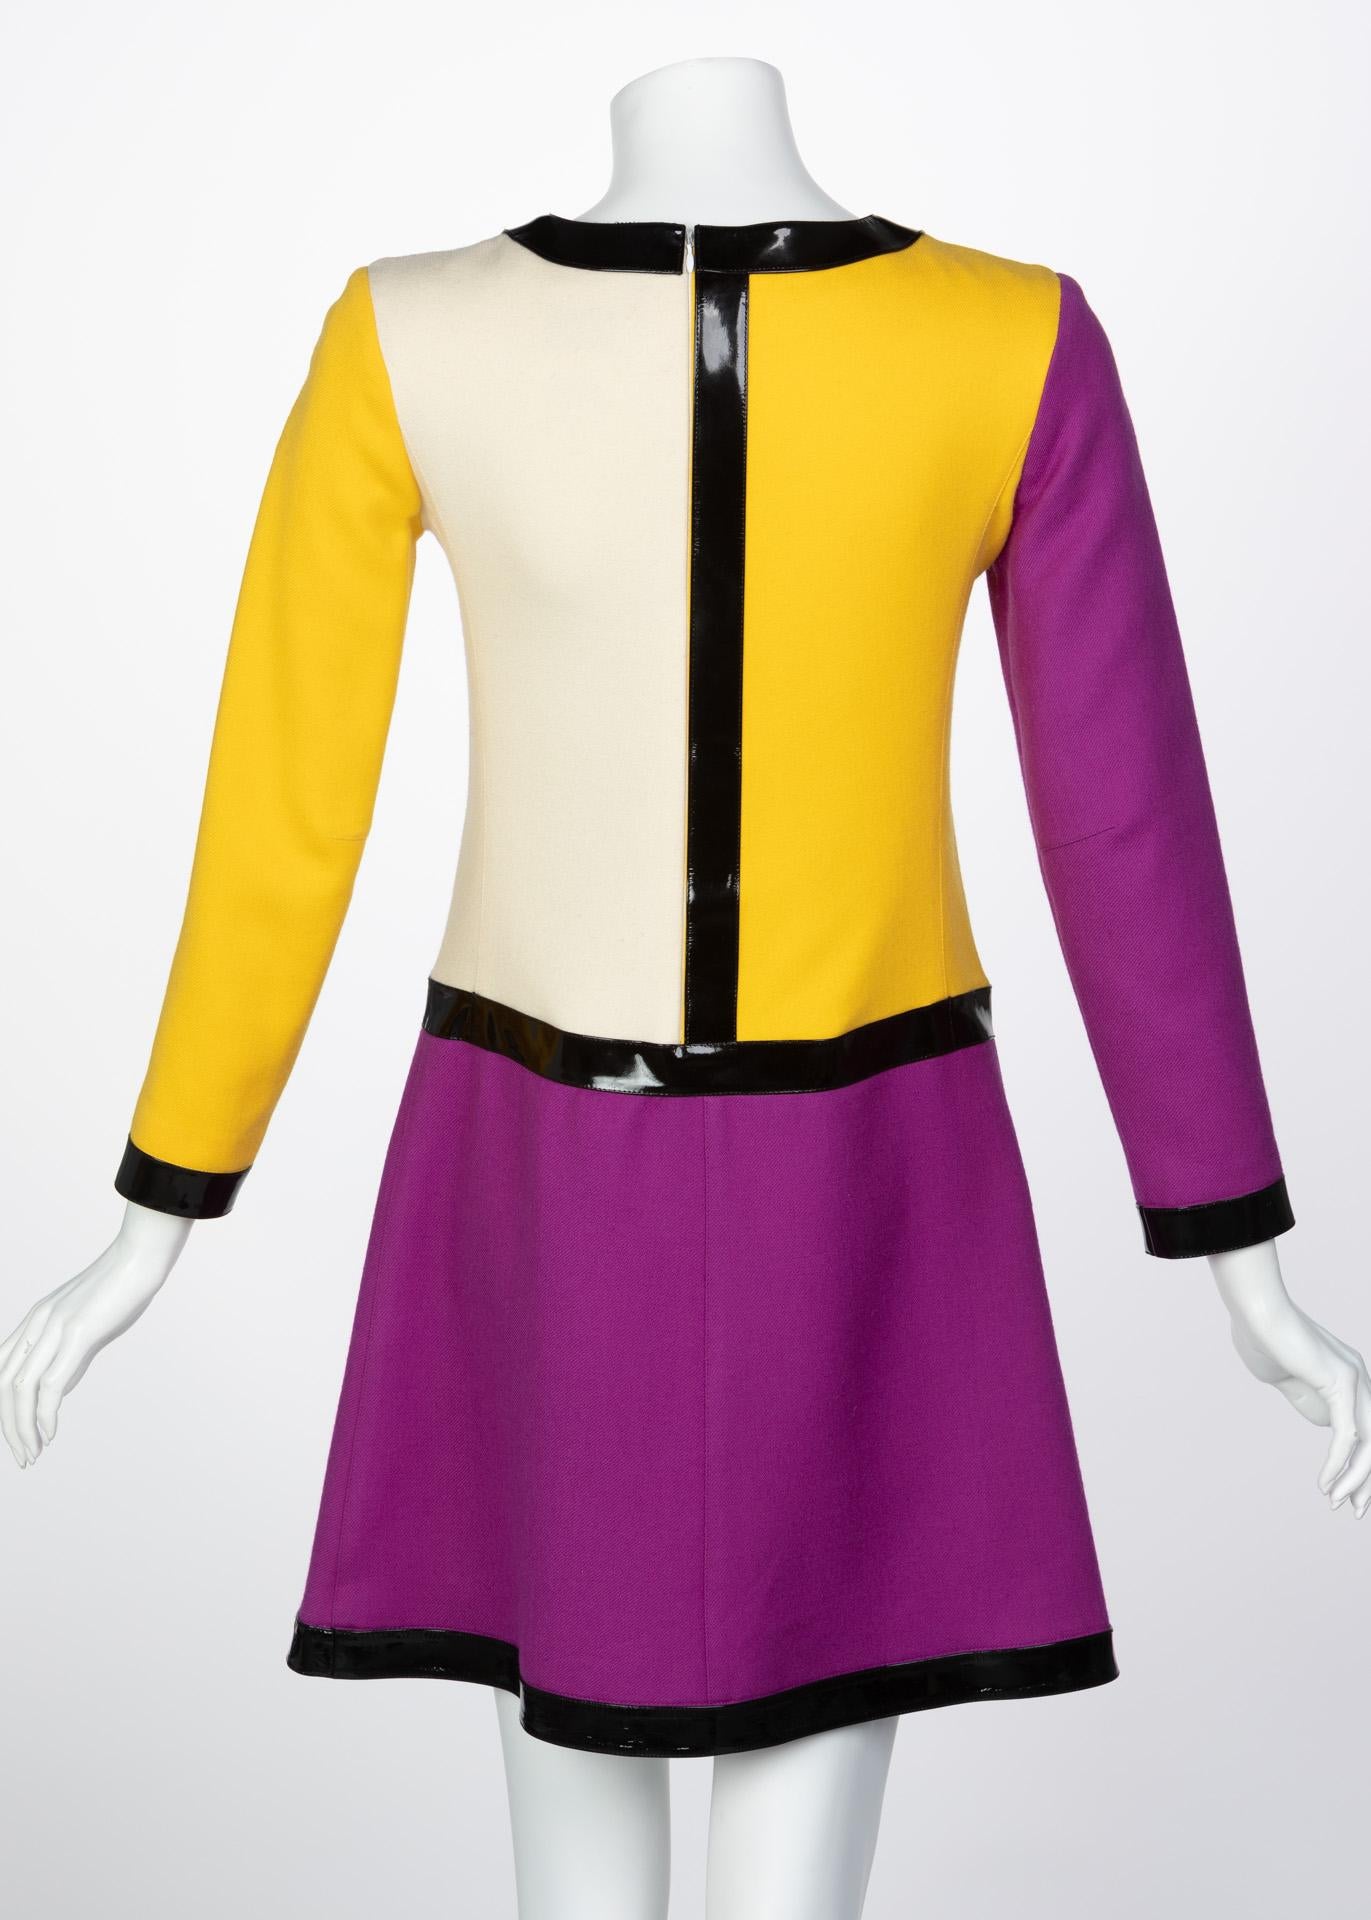 Purple Courrèges Wool Color Block Patent Leather Mondrian Mini Dress, 1960s